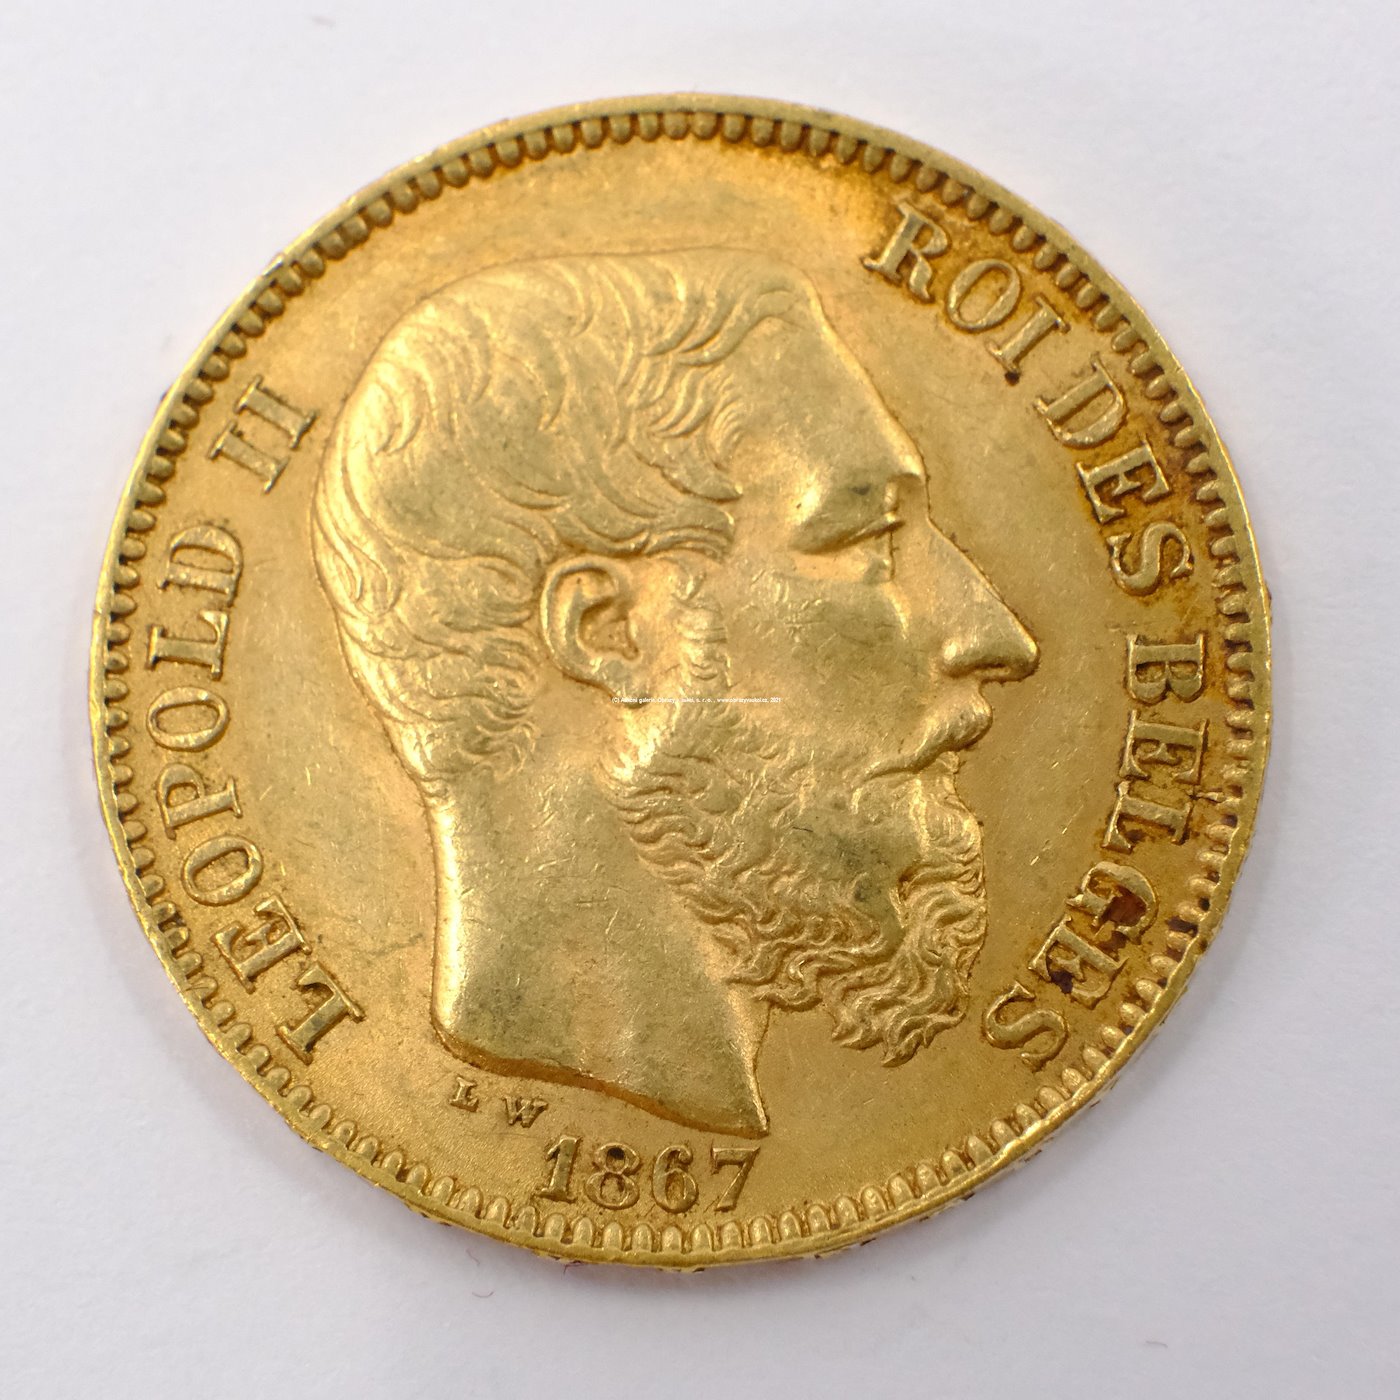 .. - Belgie zlatý 20 frank Leopold II. 1867. Zlato 900/1000, hrubá hmotnost 6,45g